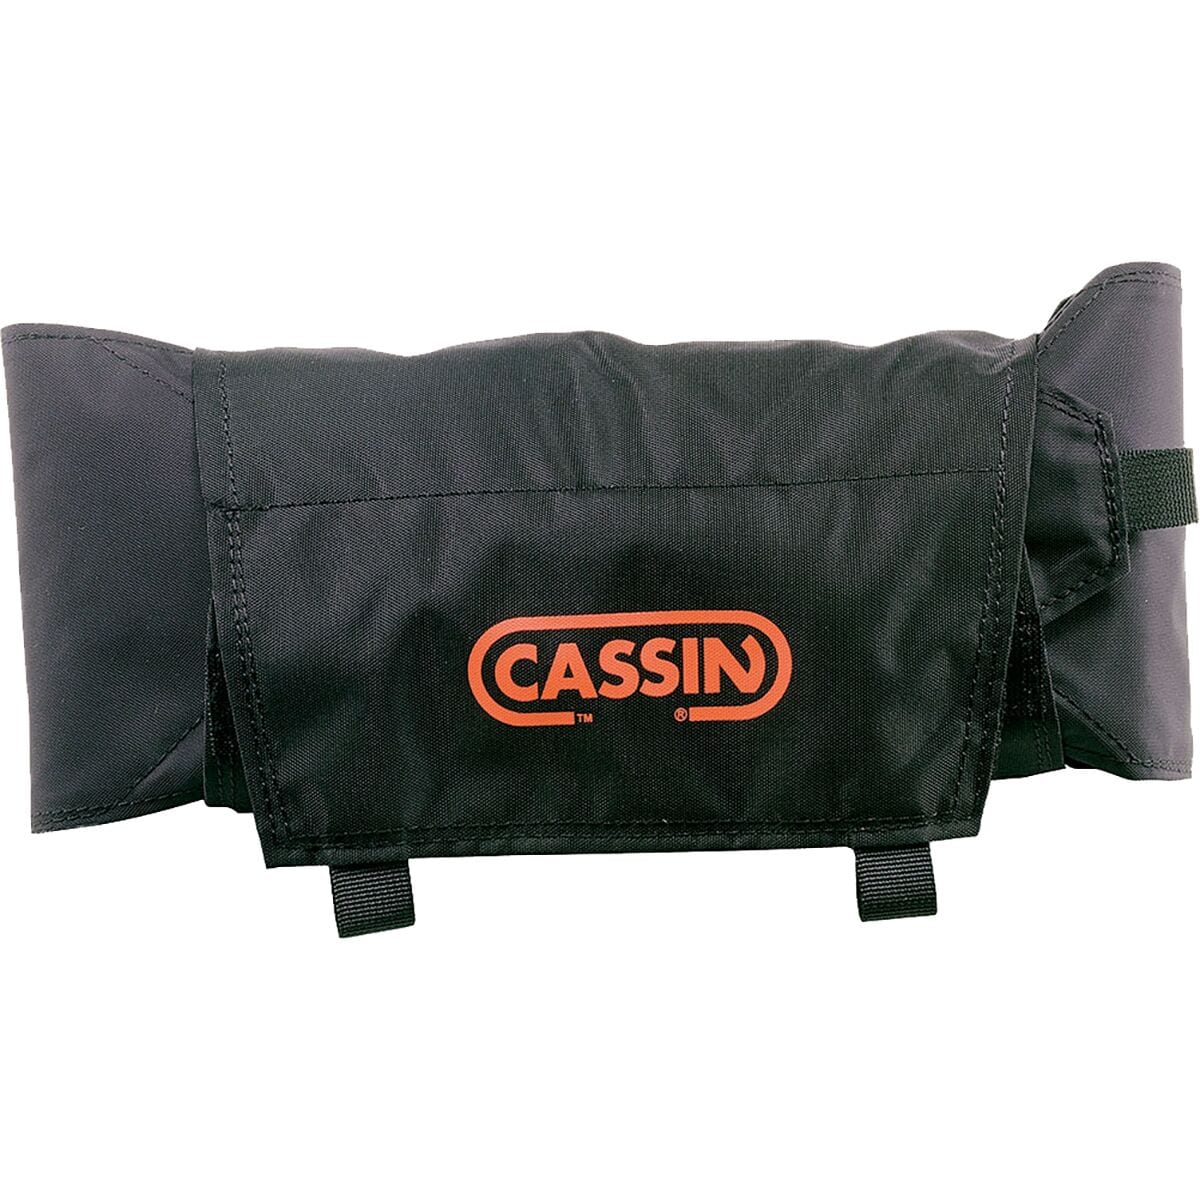 CAMP USA Foldable Crampon Bag